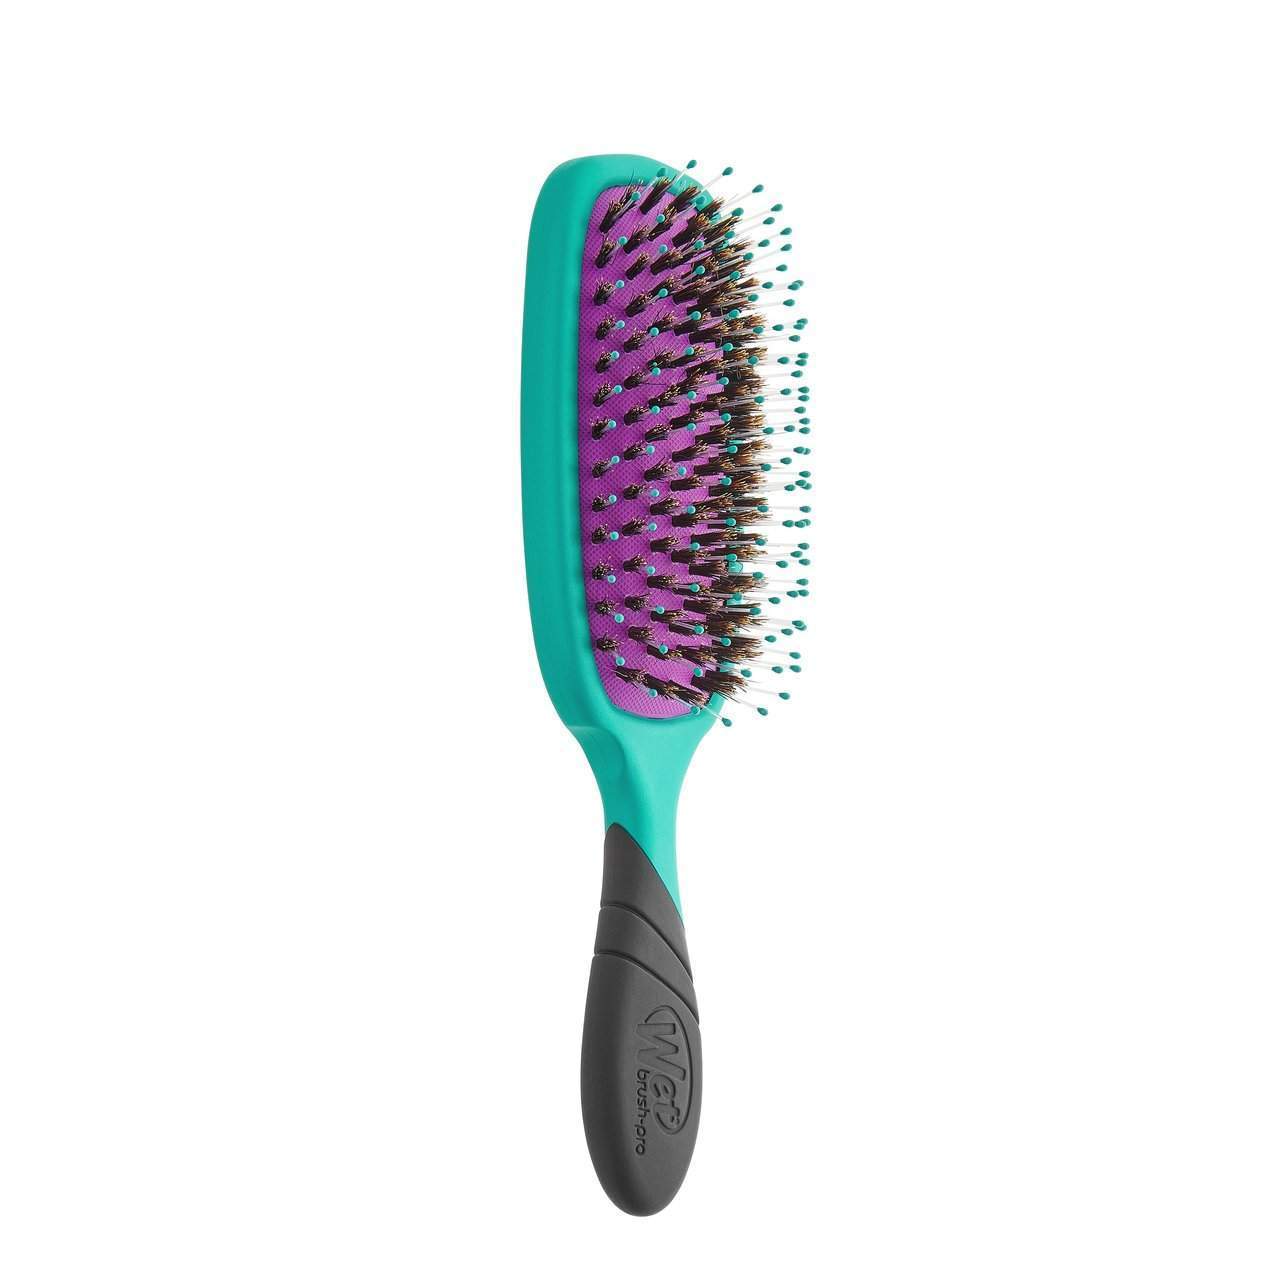 Wet Brush Pro Shine Enhancer Detangler-Wet Brush-Brand_Wet Brush,Collection_Hair,Collection_Tools and Brushes,Tool_Brushes,Tool_Detangling Brush,Tool_Hair Tools